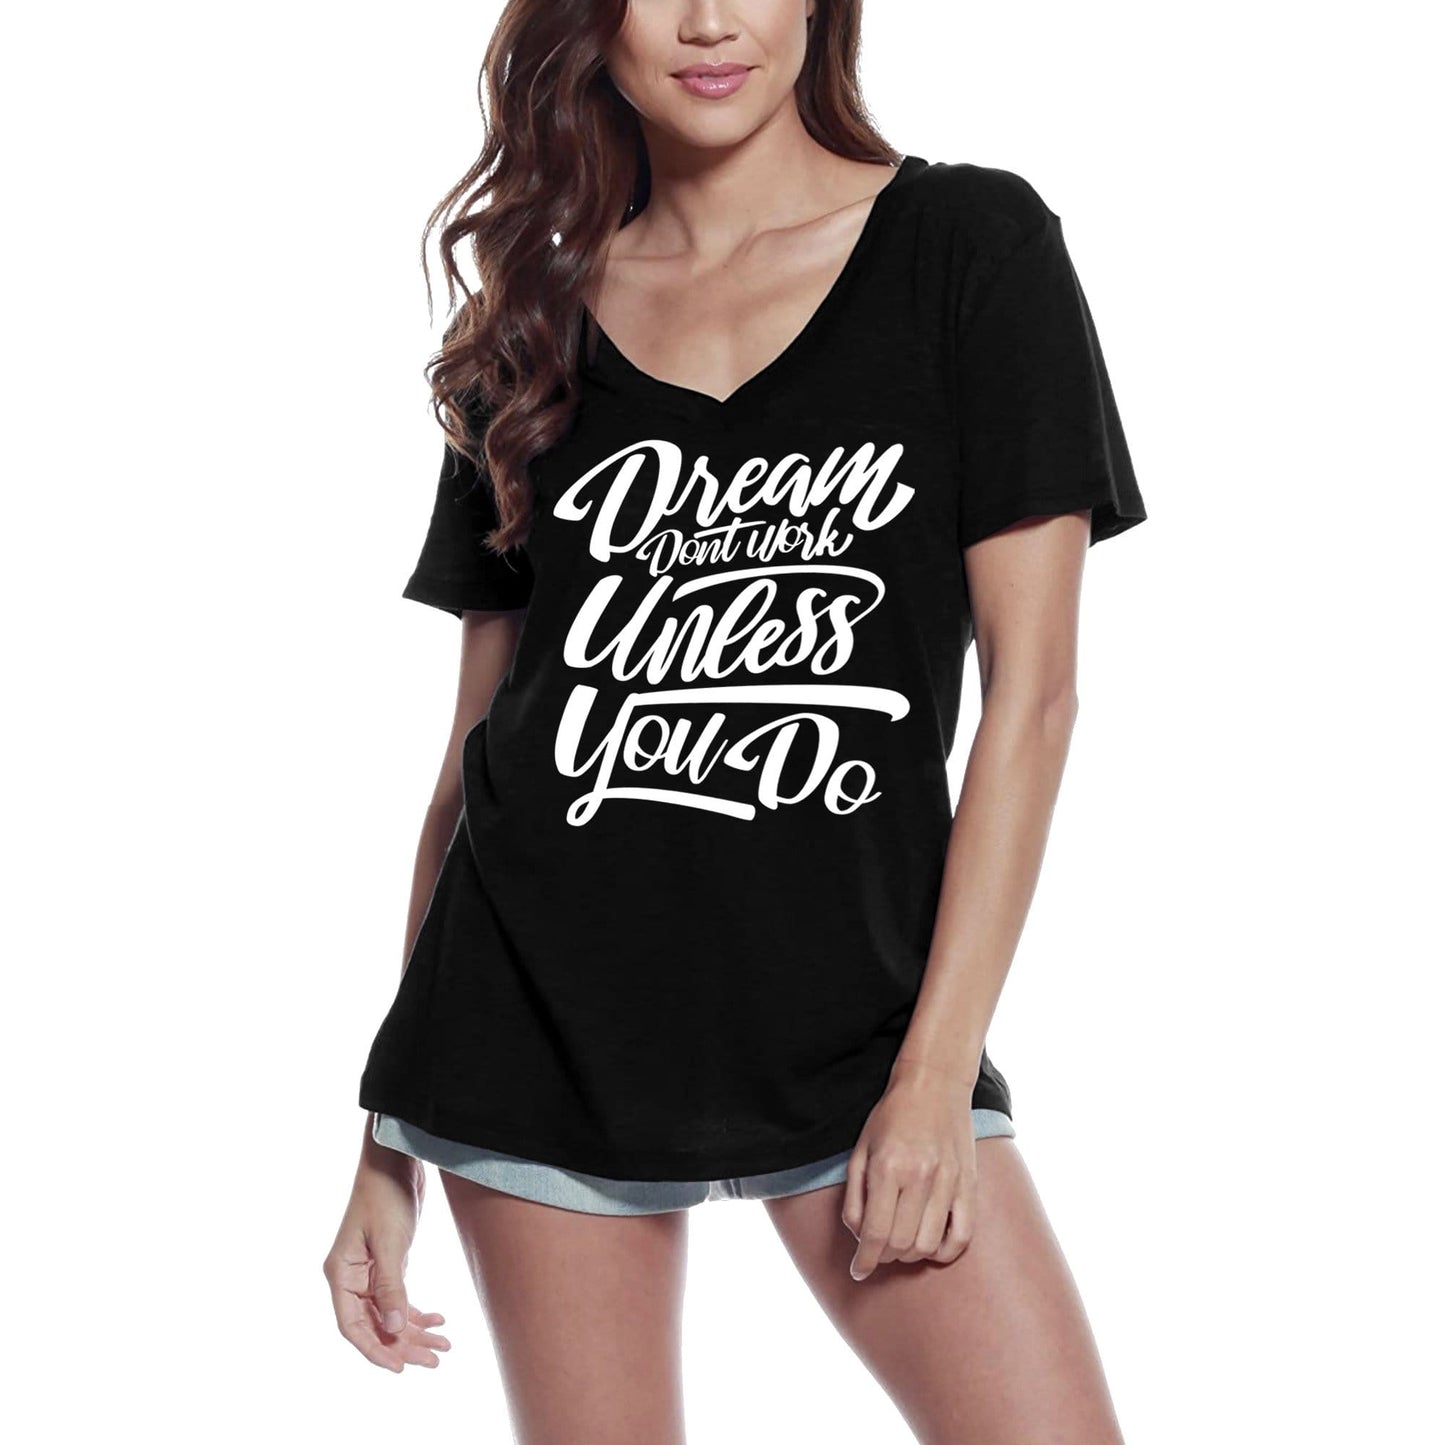 T-shirt ULTRABASIC pour femmes, Dreams Don't Work - Slogan inspirant de motivation